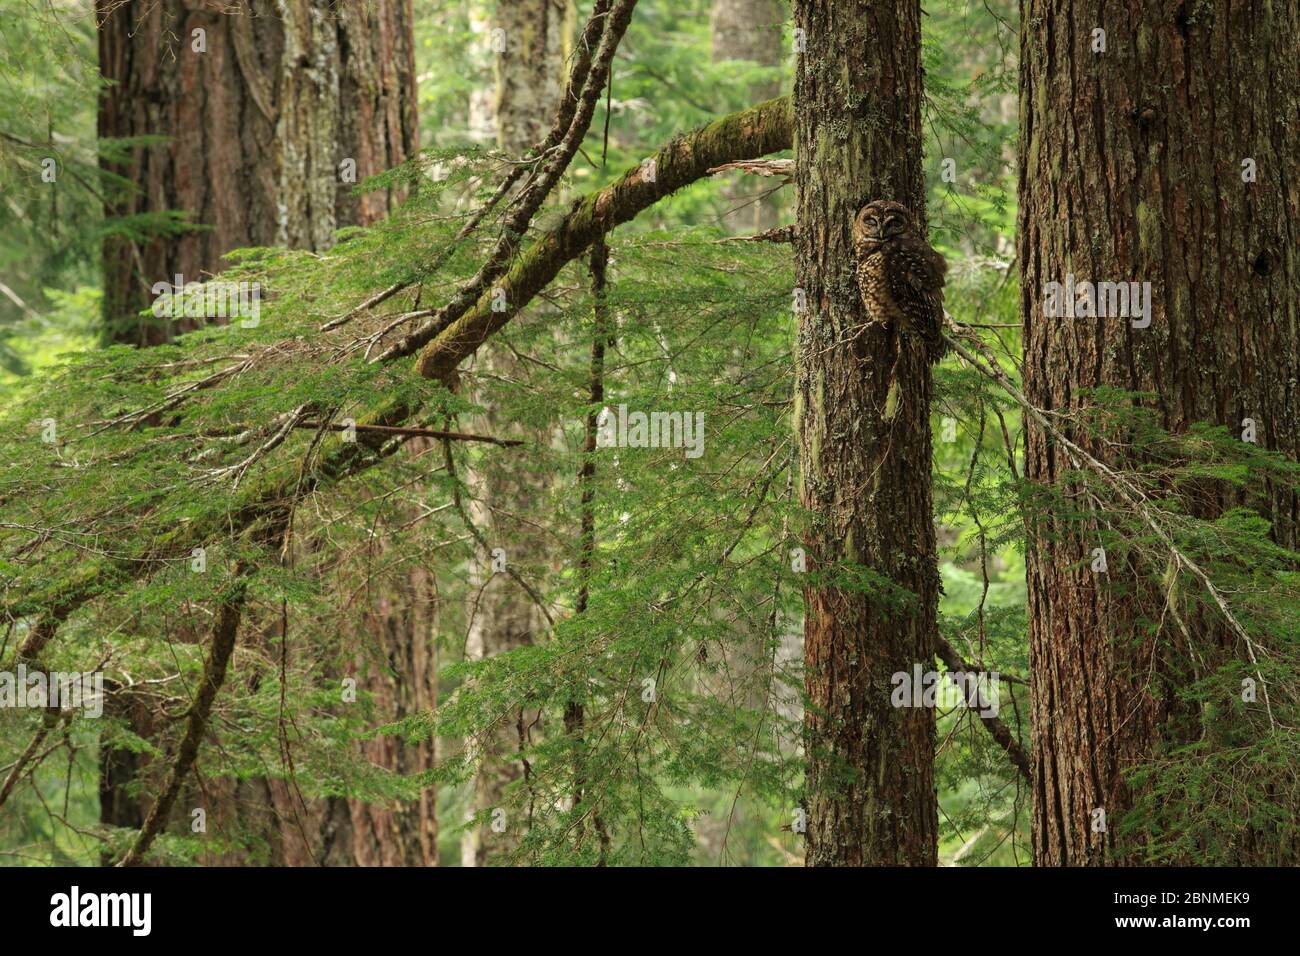 Chouette tachetée (Strix occidentalis) dans un arbre, Willamette National Forest, Oregon. Juin. Banque D'Images